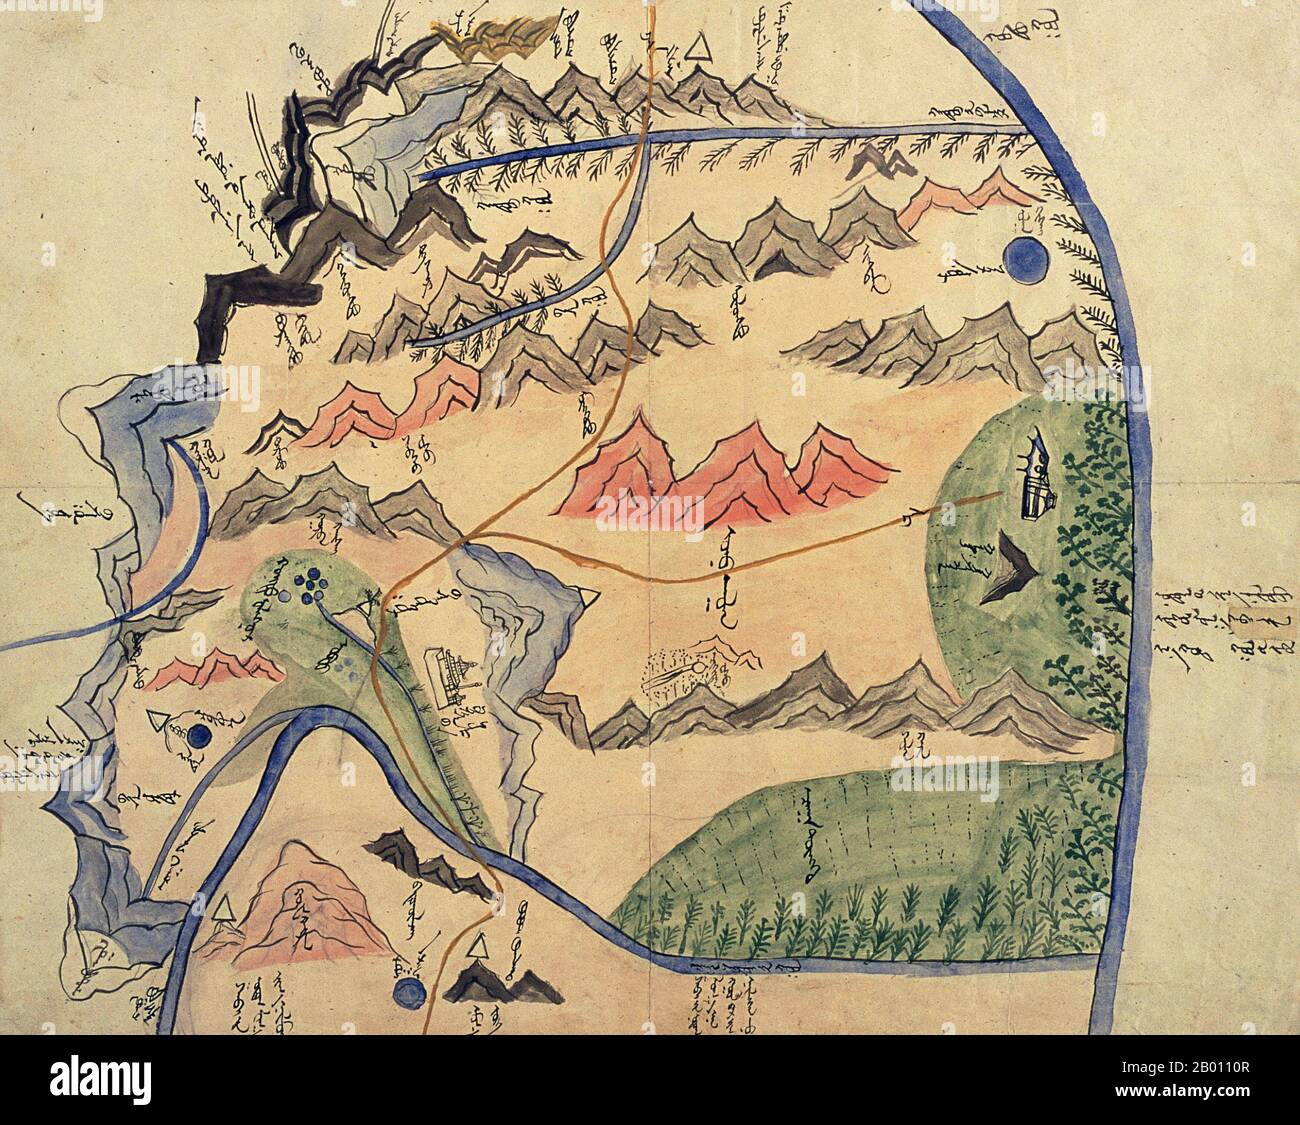 Mongolei: Karte der Jutgelt Gun's hoshuu (Banner) des Altai Urianhai in der westlichen Mongolei (1912-1914). Material ist chinesisches Papier, Originalgröße ist 36x45 cm. Stockfoto